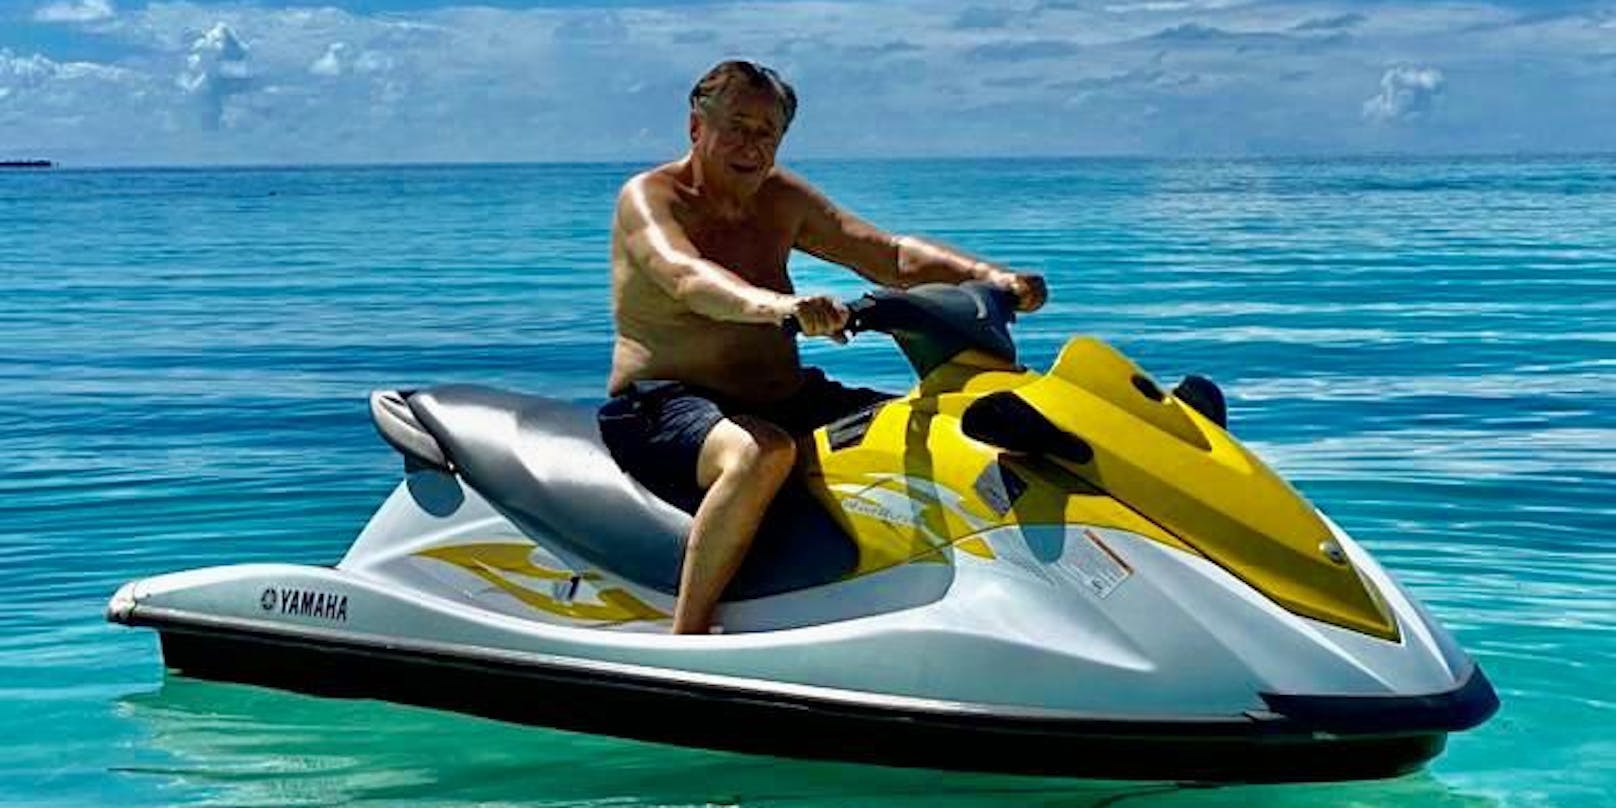 Richard Lugner vergangene Woche beim Jet-Ski-Fahren auf den Malediven.<br>